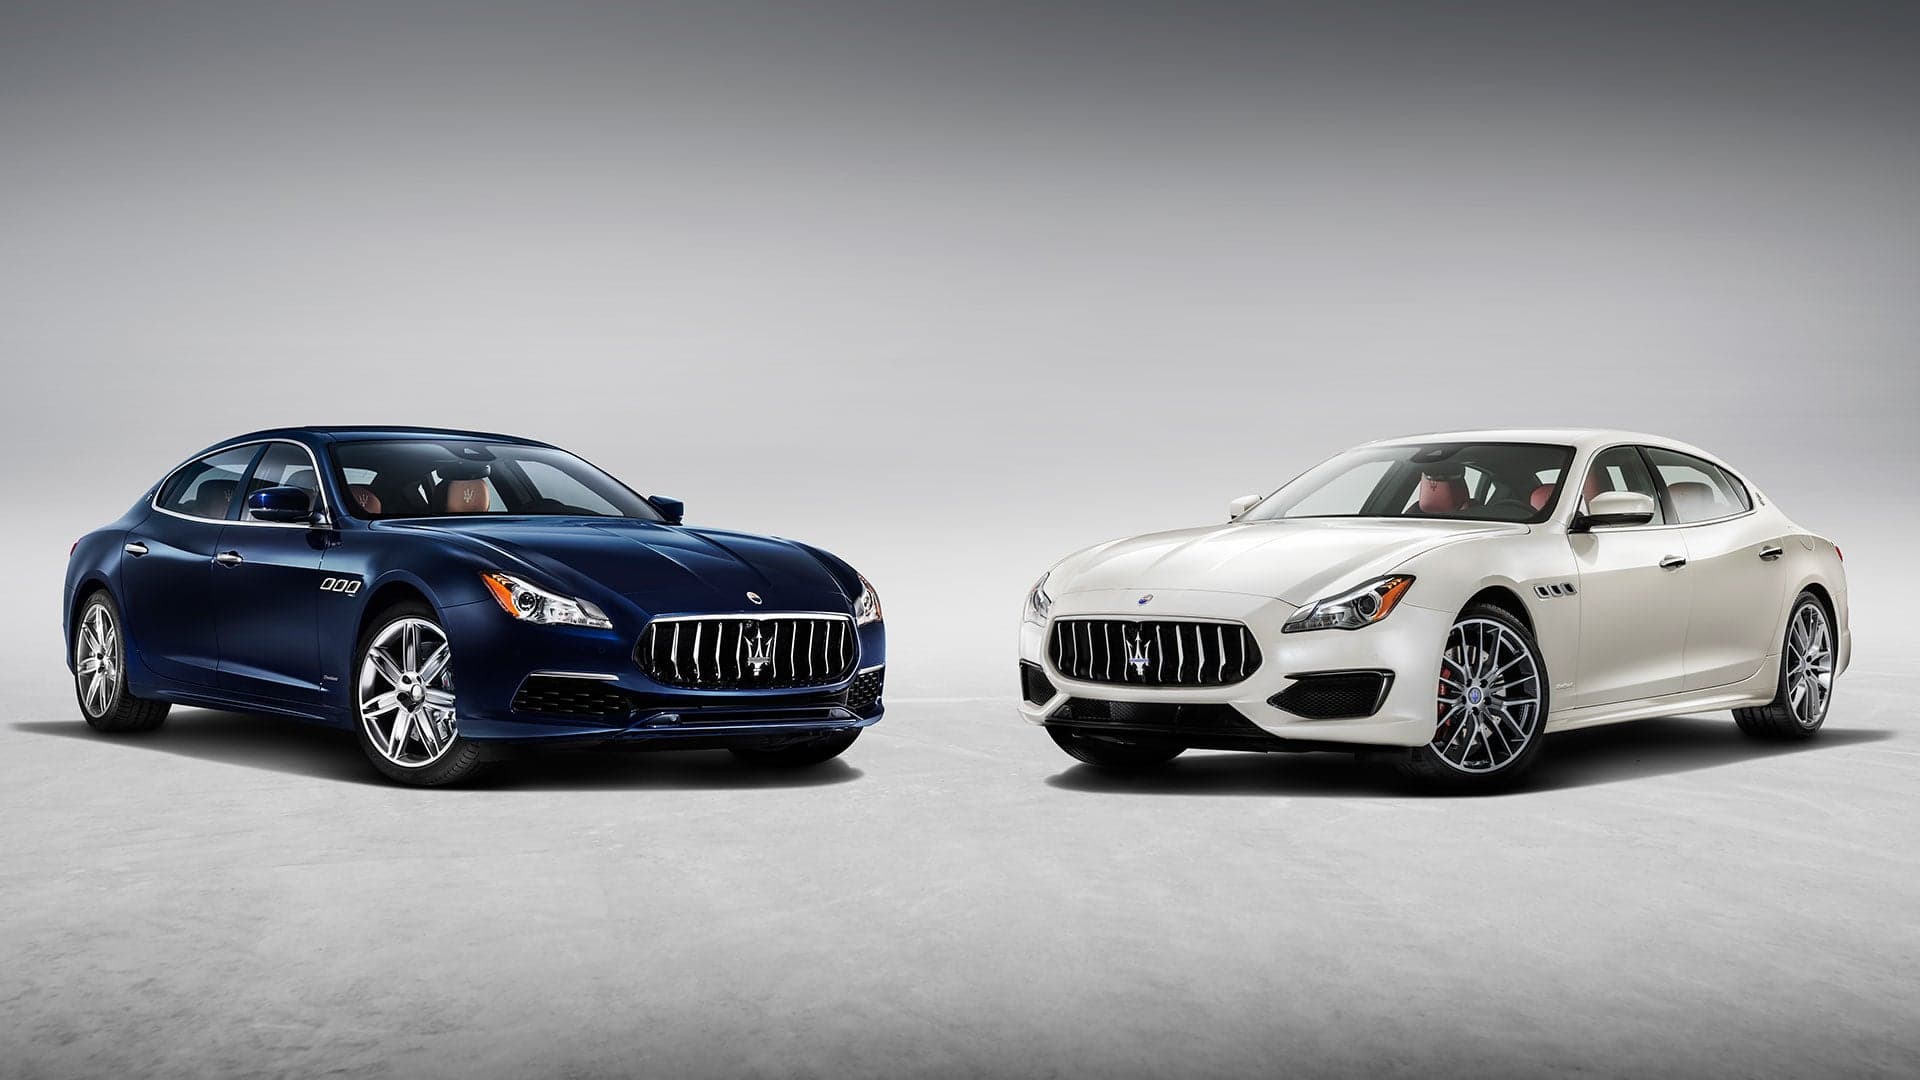 The 2017 Maserati Quattroporte Is a Driver’s Idea of Luxury